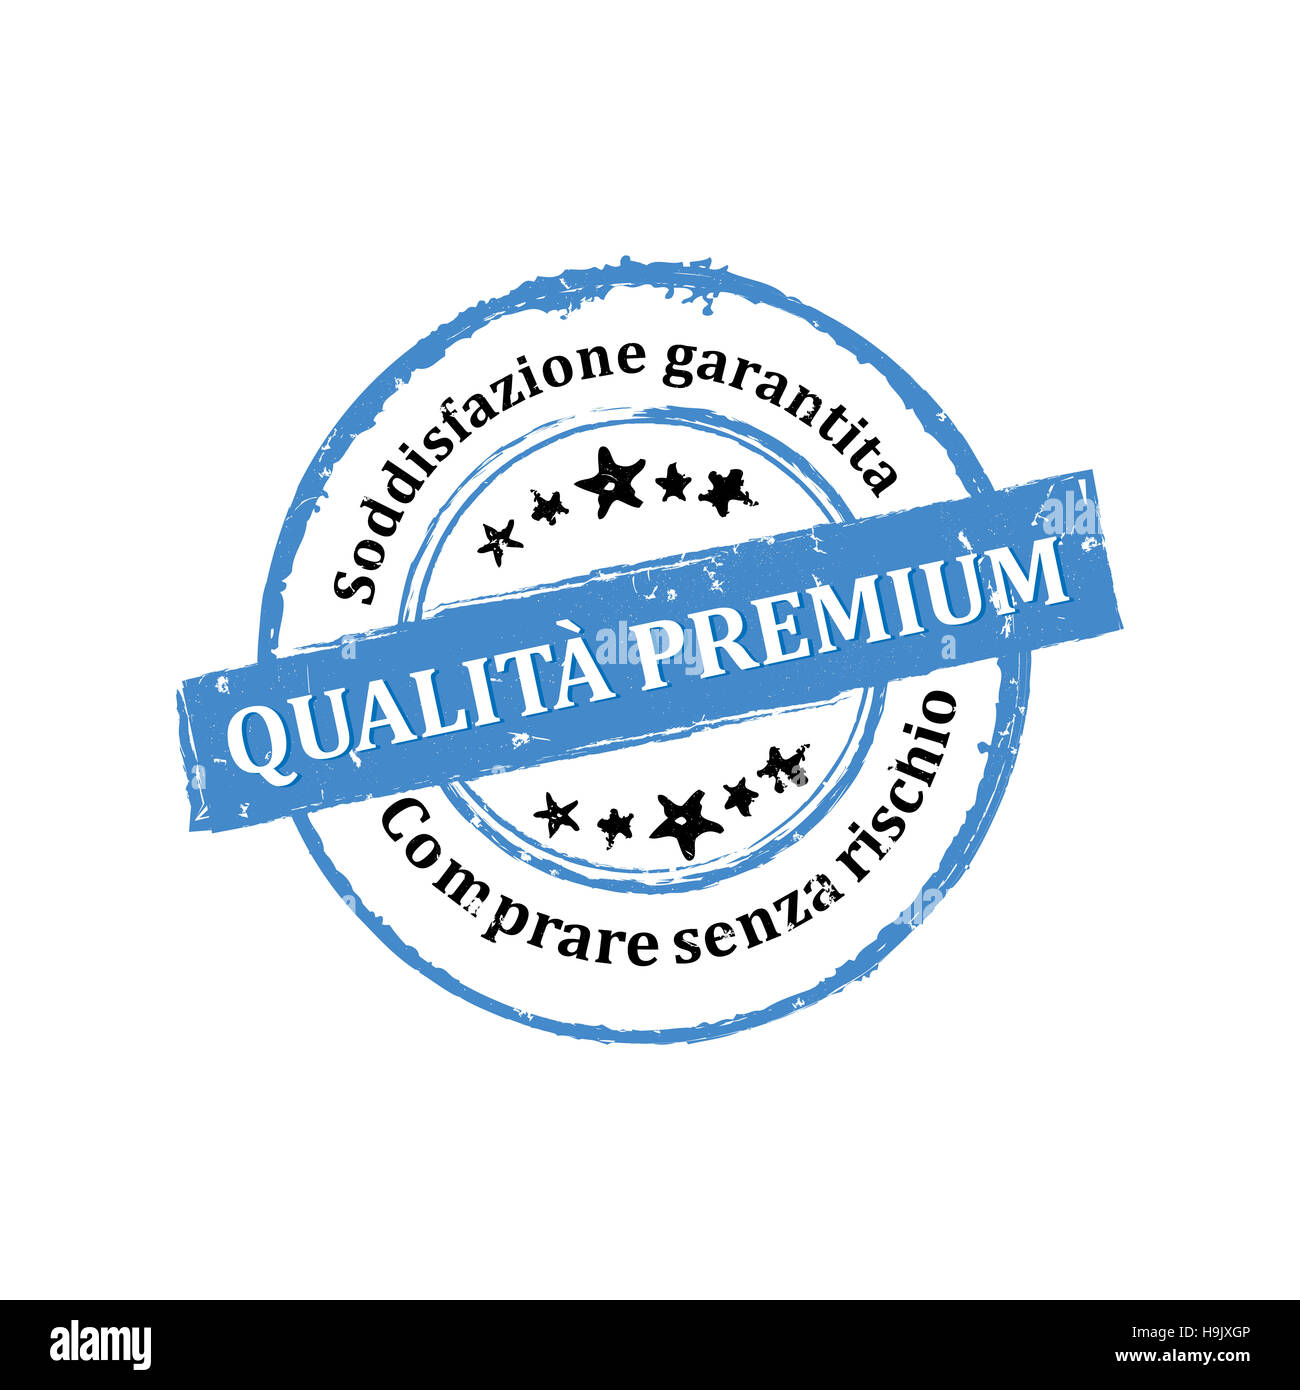 Qualità Premium, Soddisfazione Garantita, Comprare senza rischio etichetta / Medaglia Stock Photo